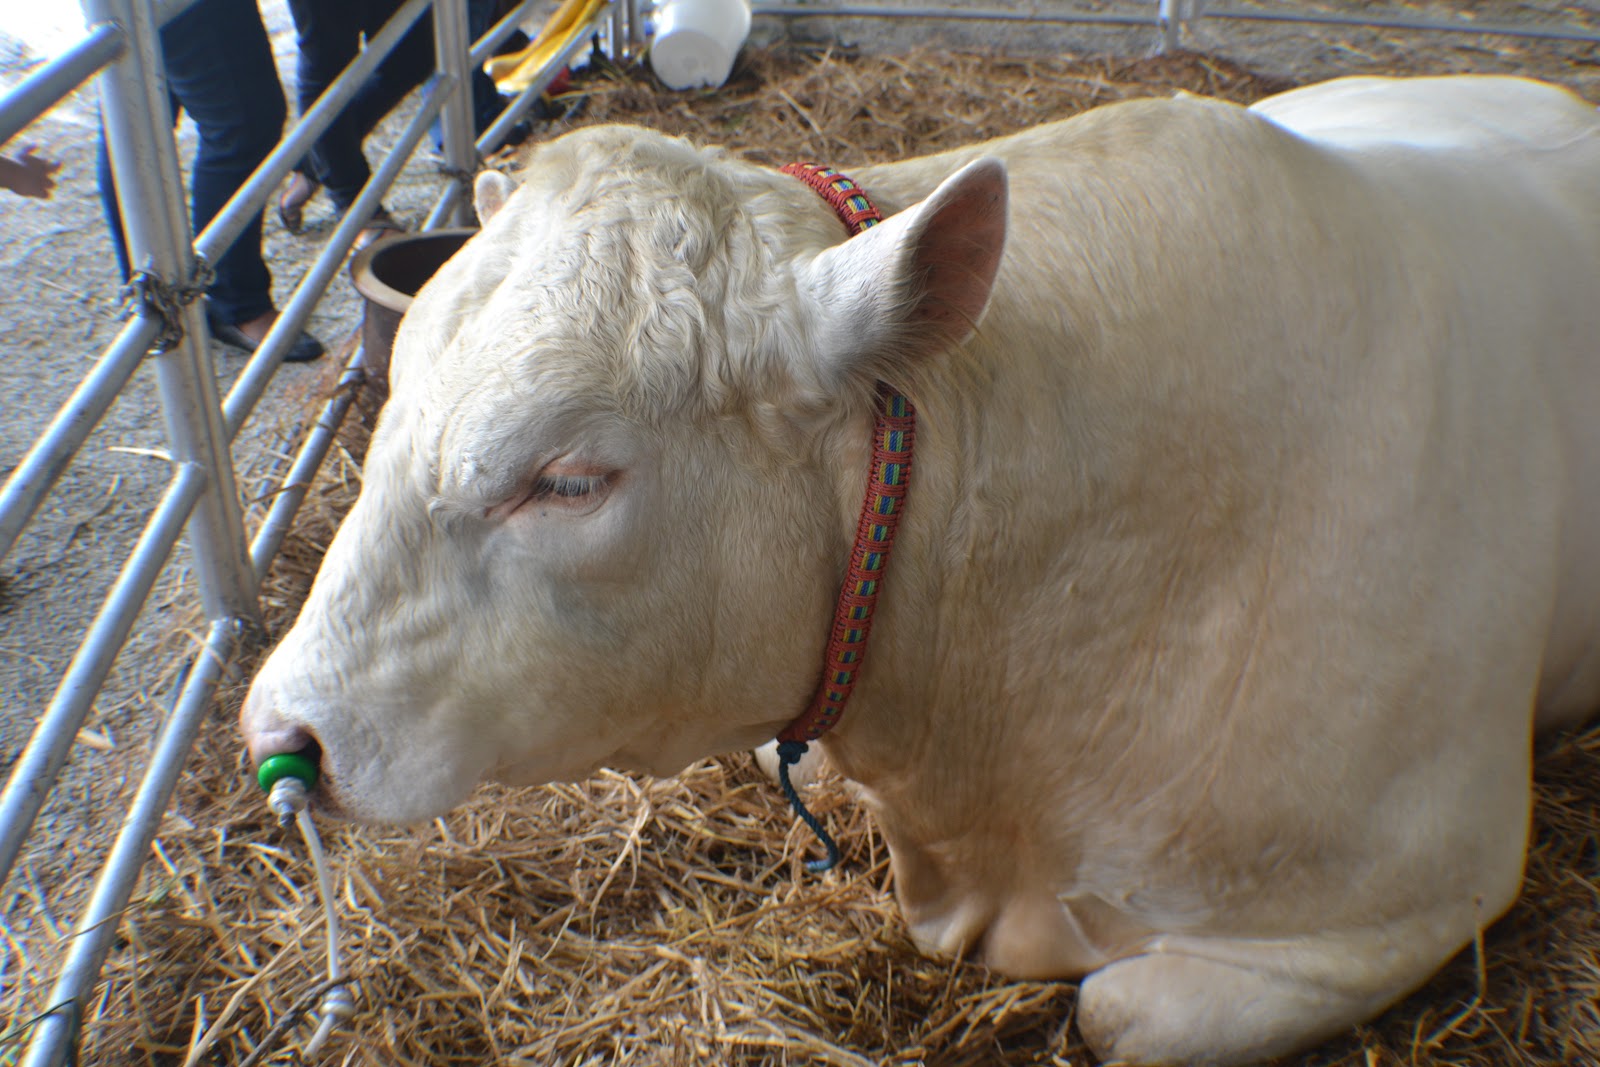 Lembu Makan Rumput Hitam Putih / Lembu ragut lembu makan rumput gambar.